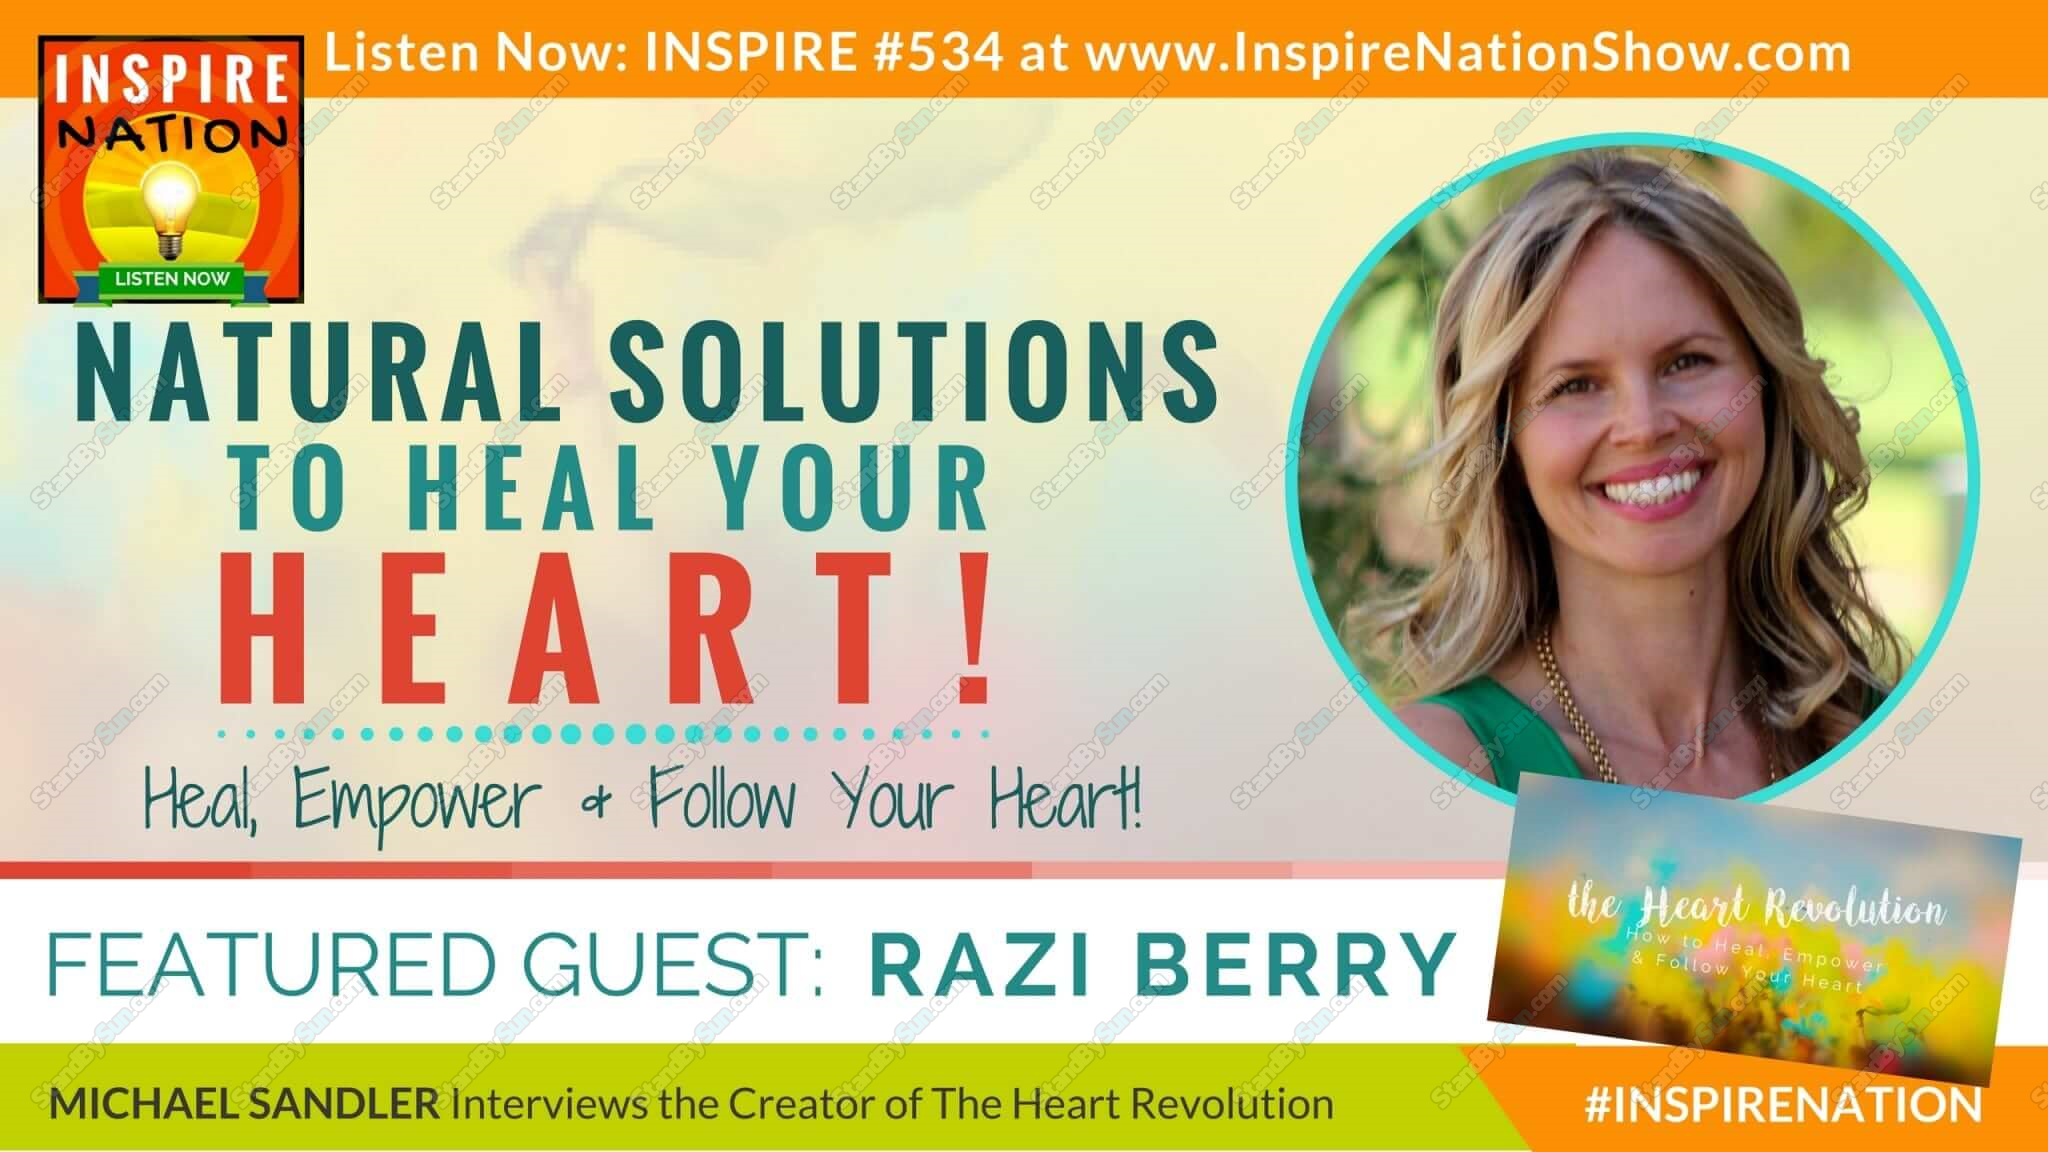 Razi Berry - The Heart Revolution 2017